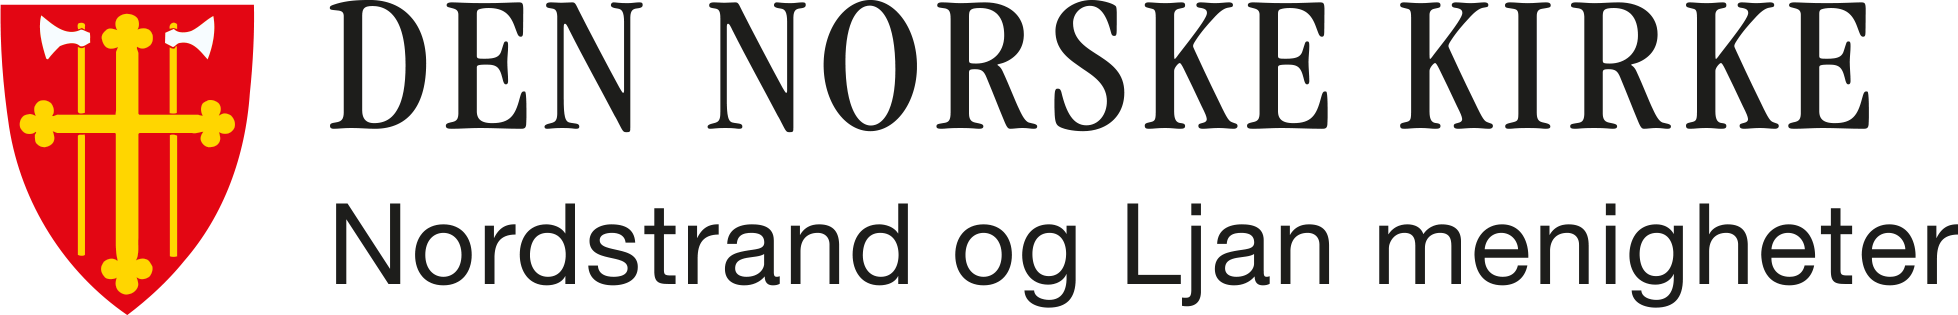 Nordstrand og Ljan menigheter logo